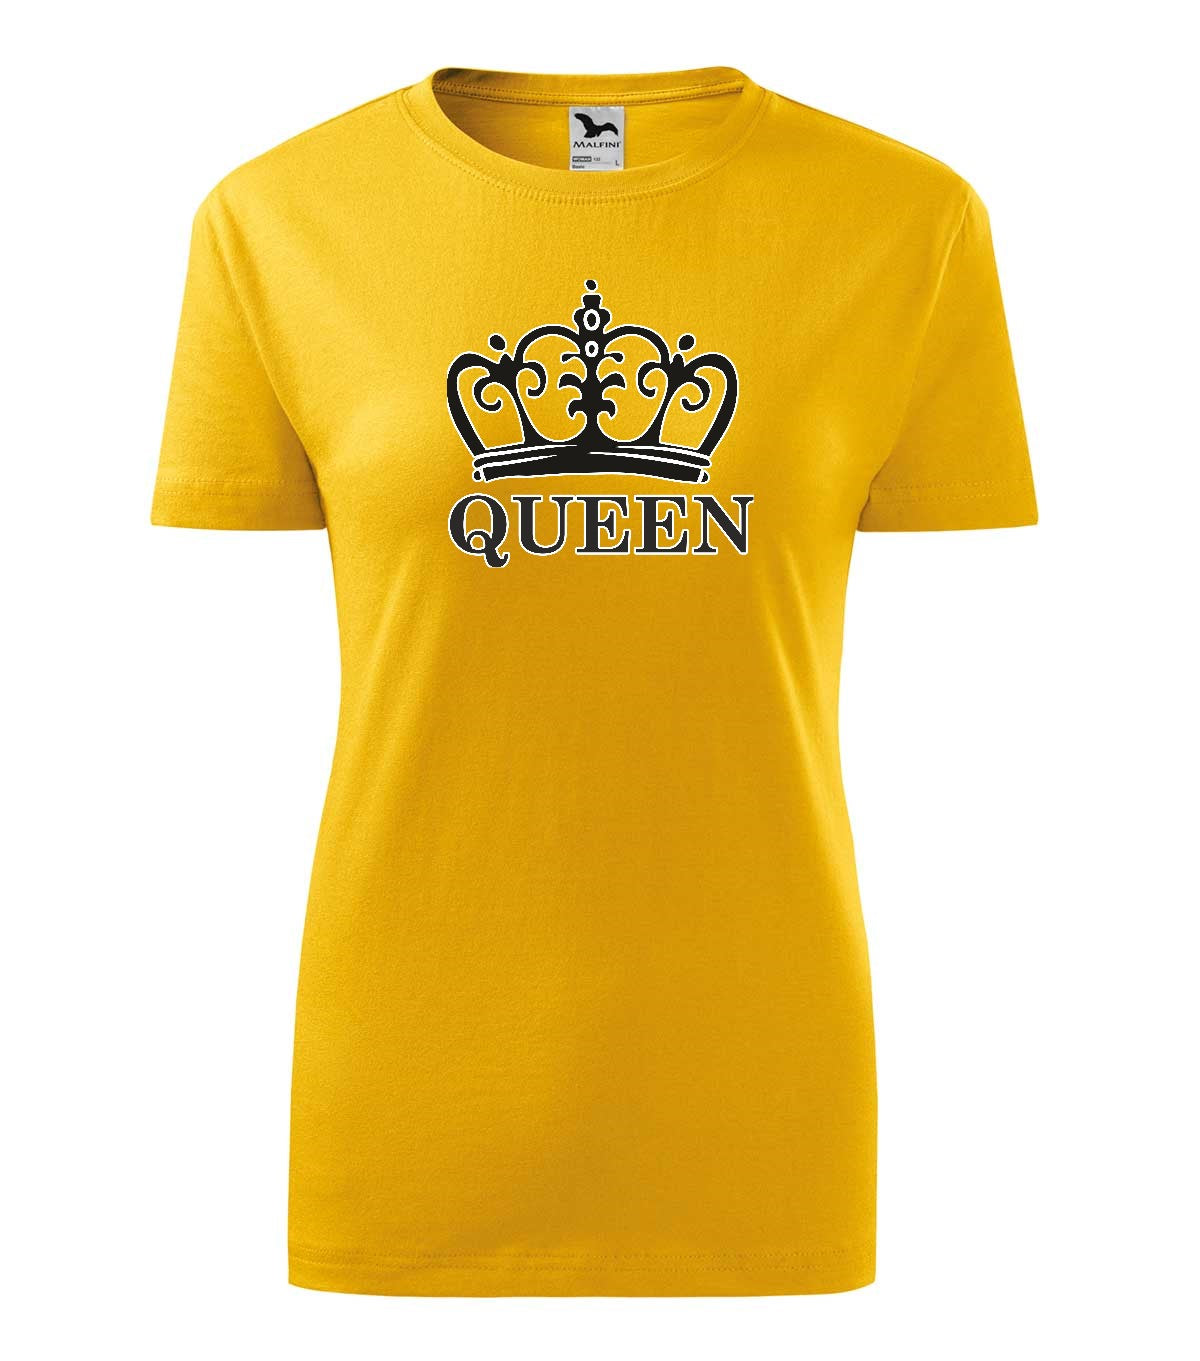 Queen női póló